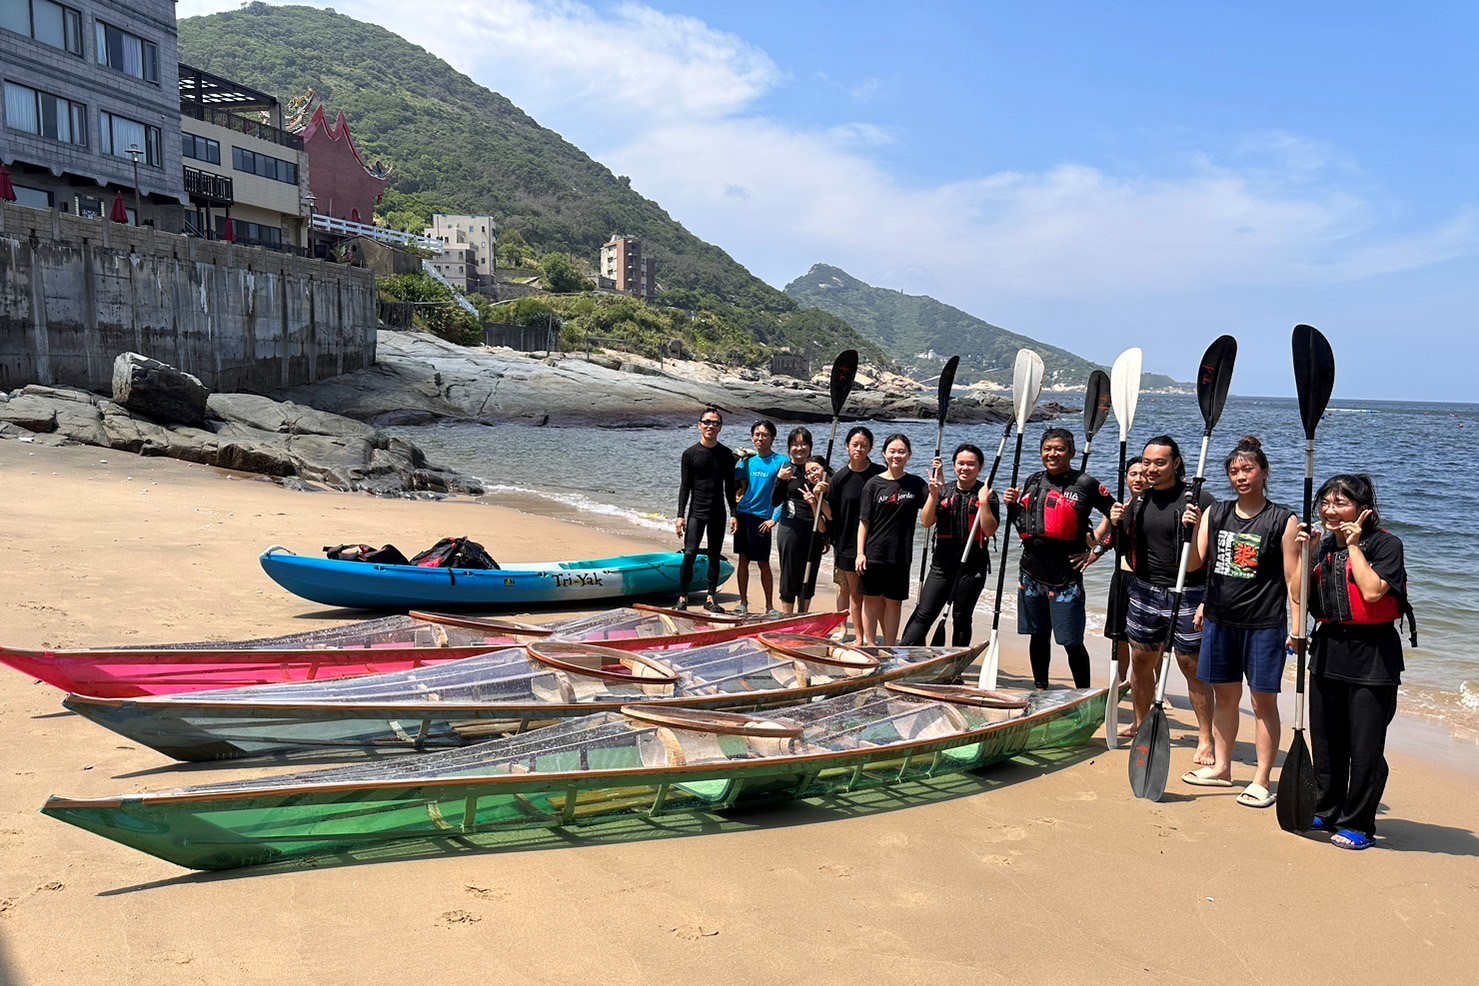 獨木舟由海大學生學習並帶領在地學子共同打造.jpg